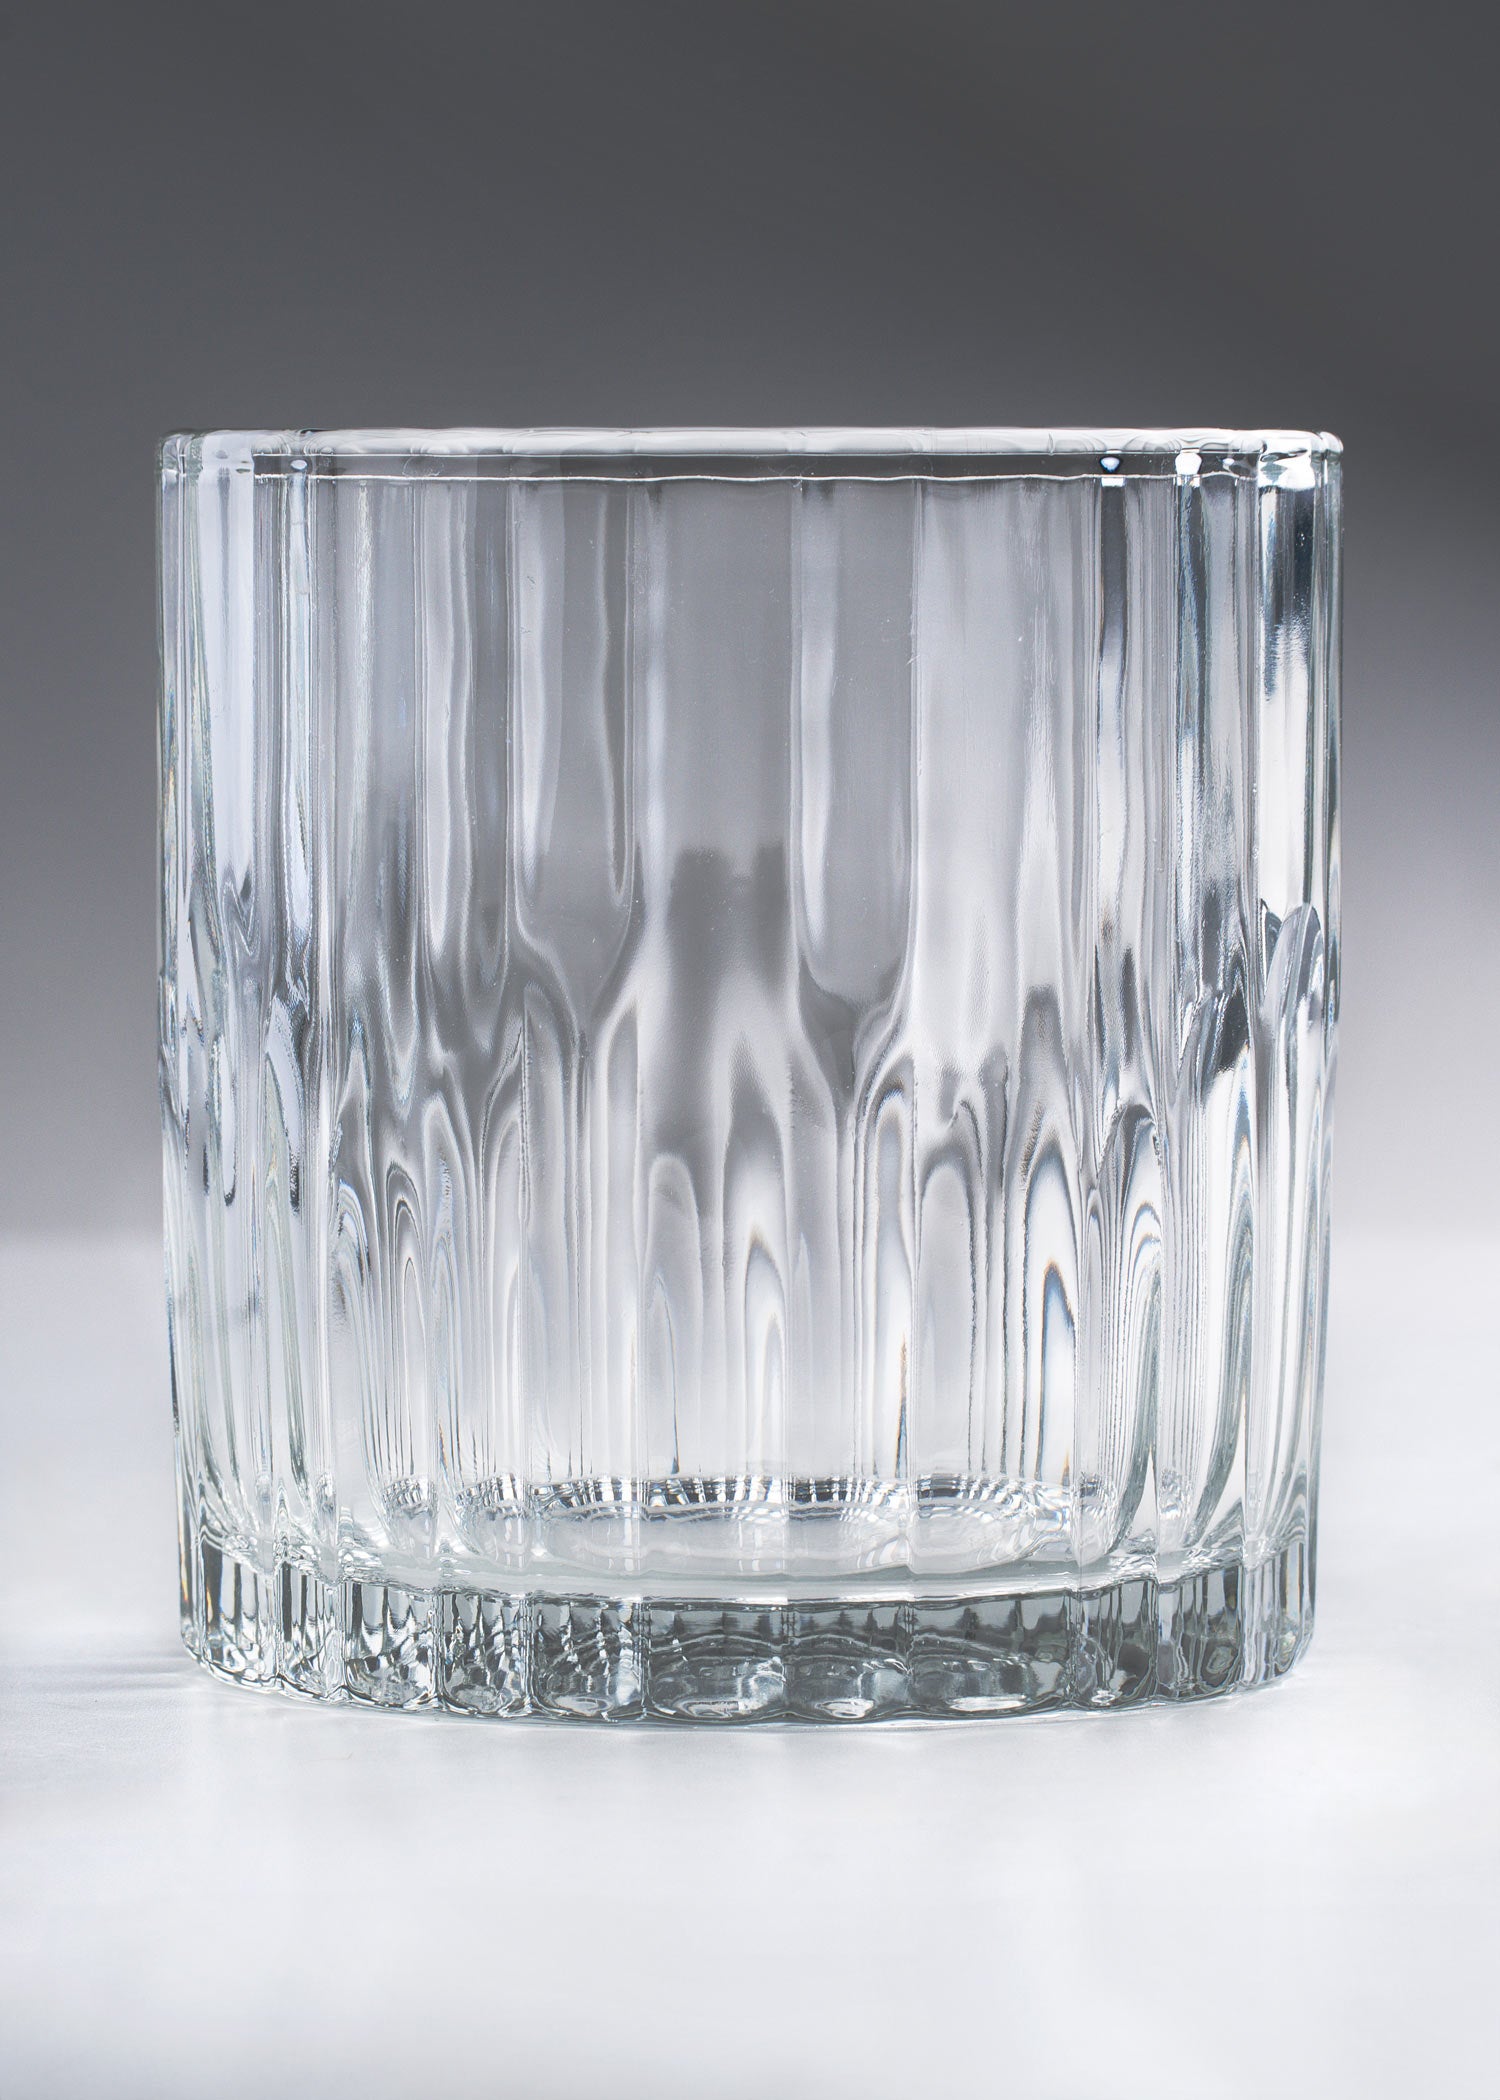 precio vaso vidrio maha